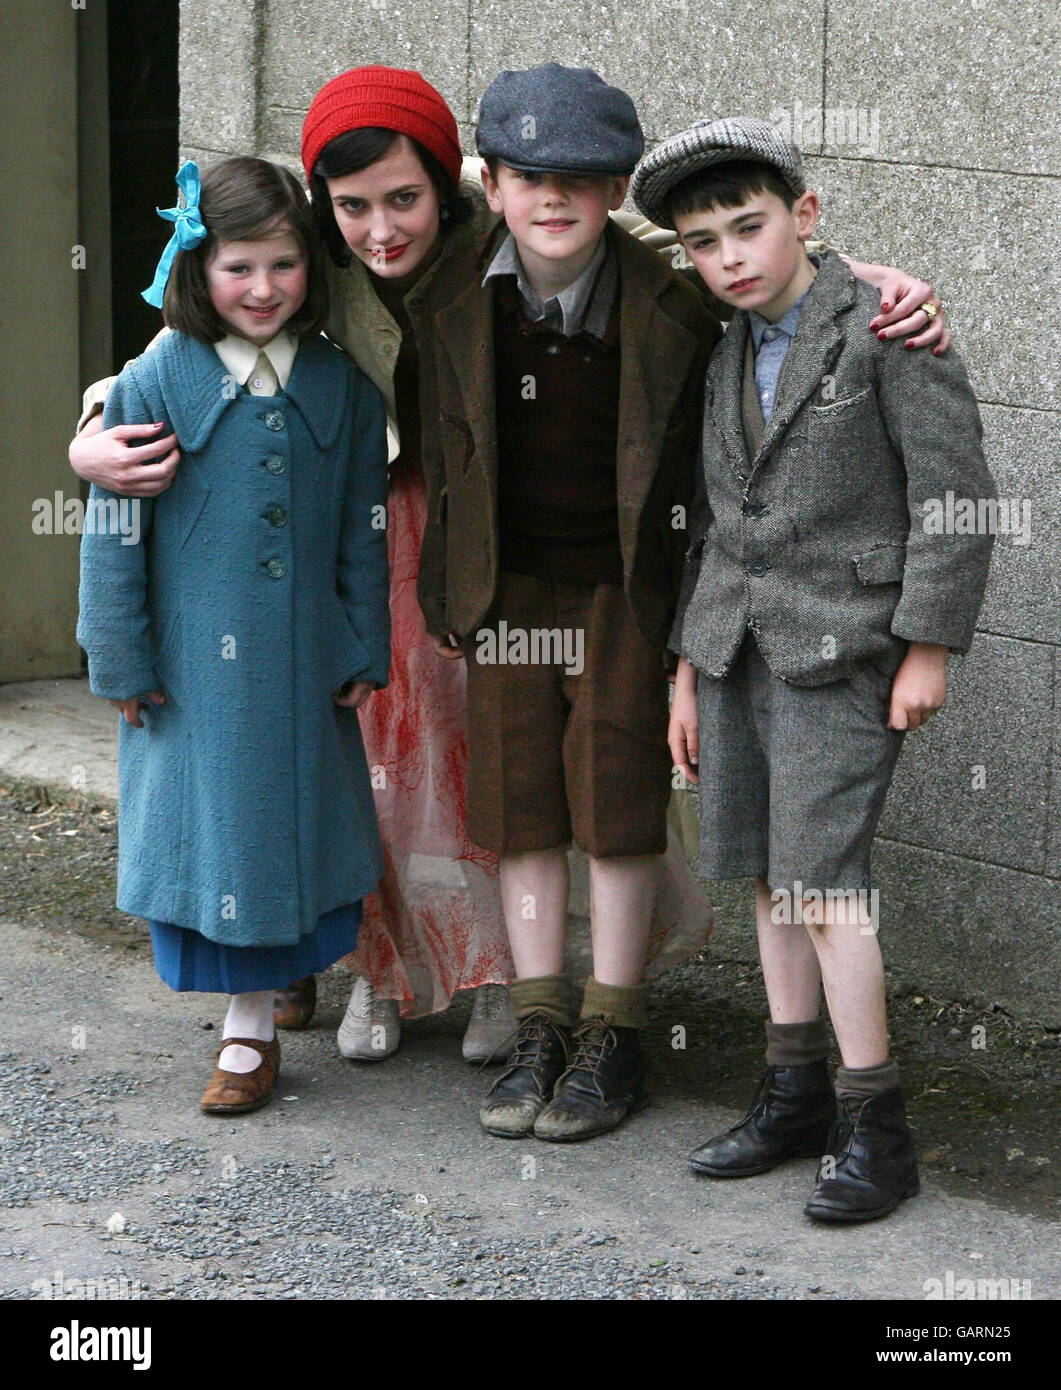 Schauspielerin Eva Green im Bild mit Extras (von links nach rechts) Niamh Sutton, James Vance und Kyle Byrne während einer Drehpause für den neuen Film 'Cracks' in Redcross, County Wicklow, Irland. Stockfoto